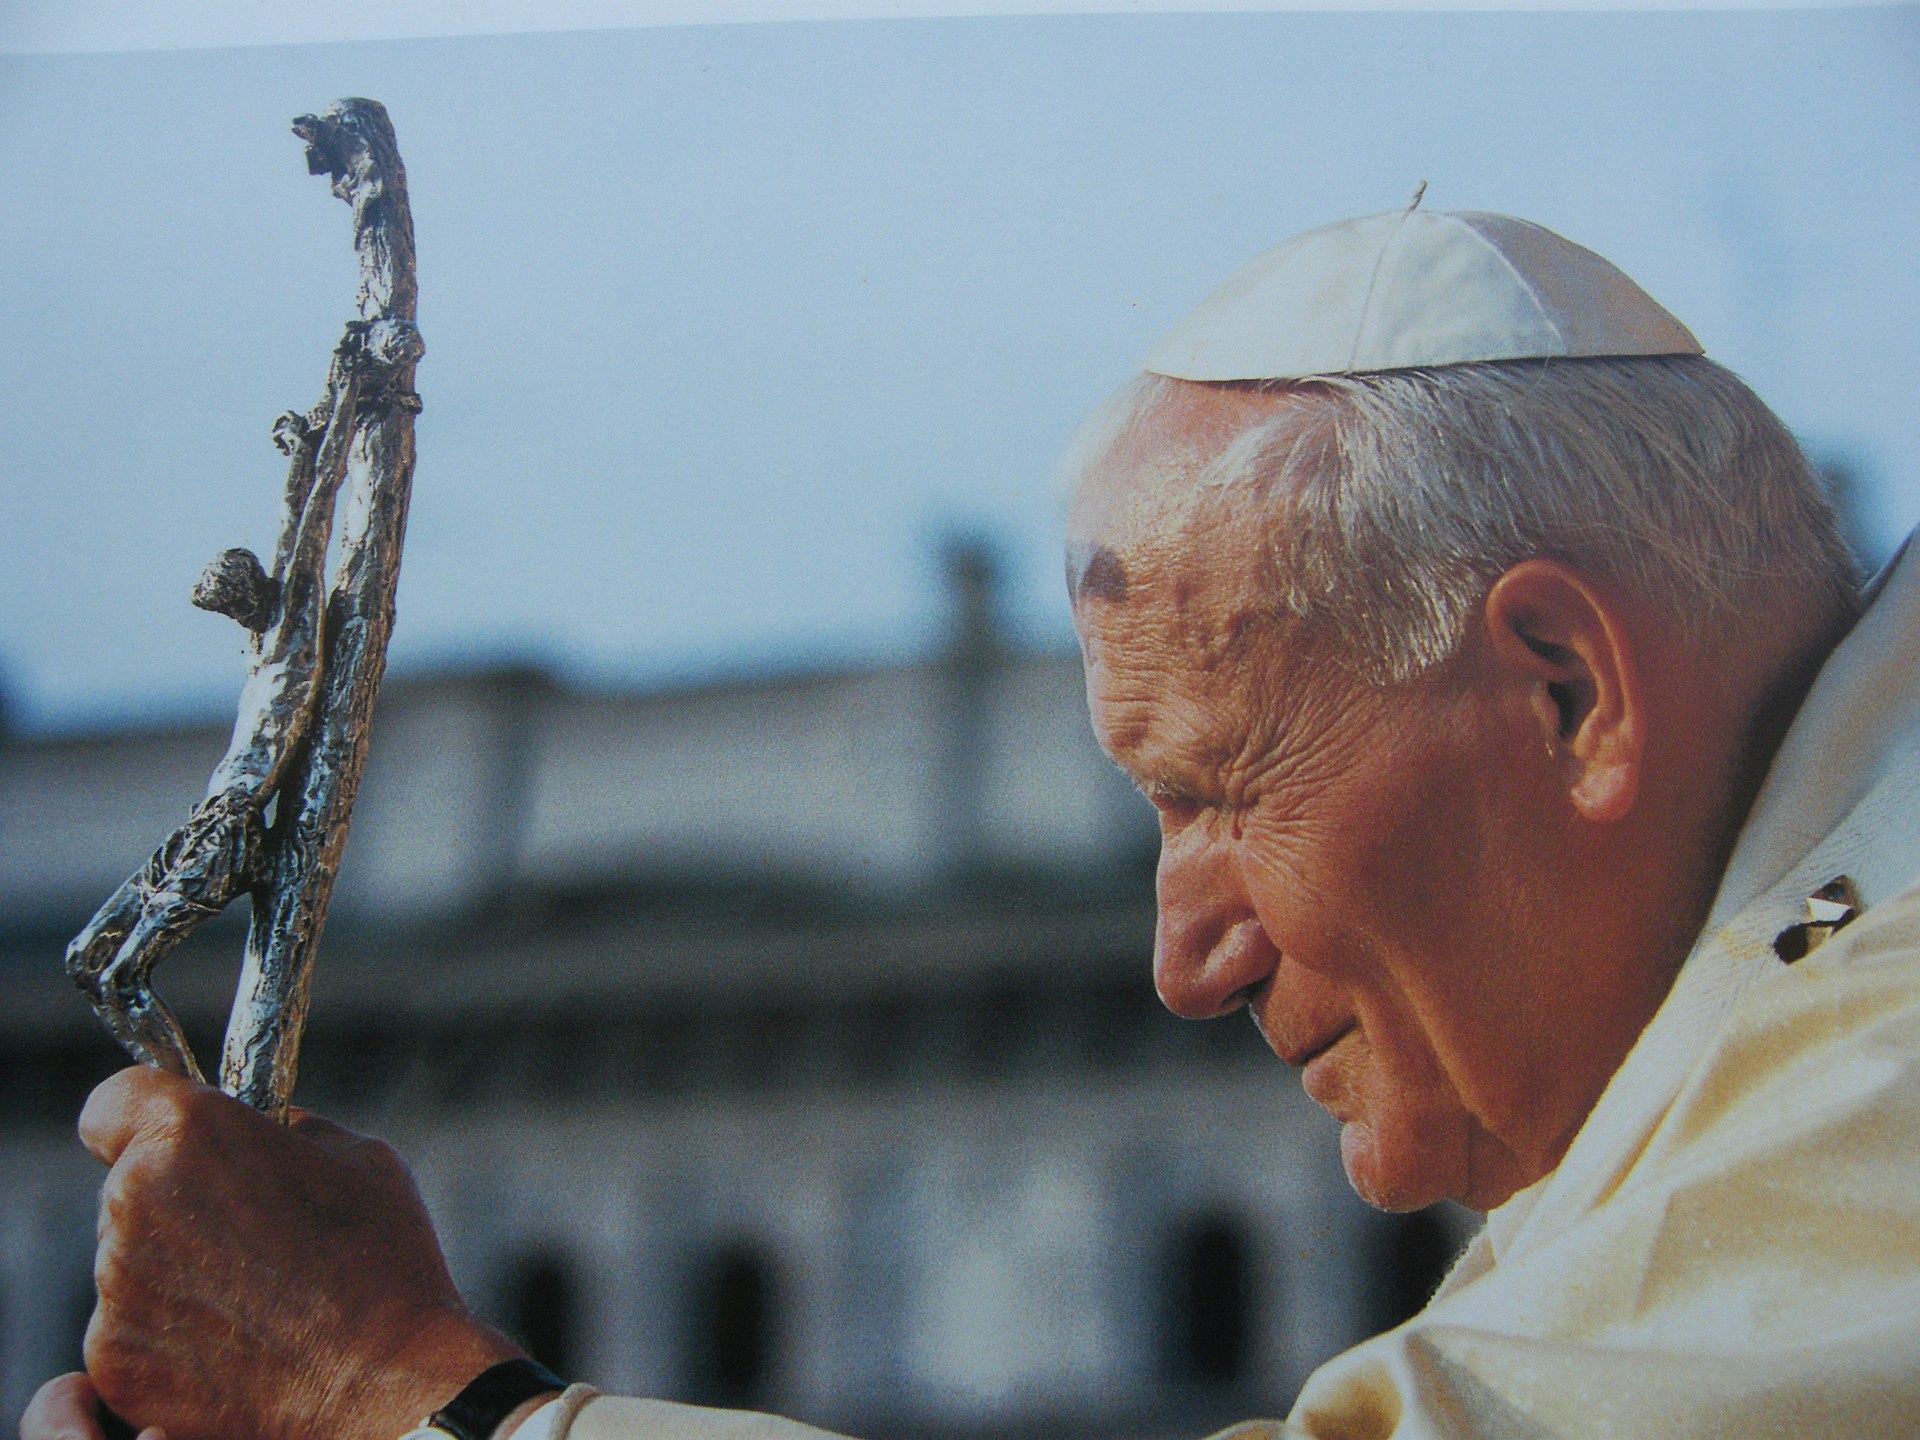 Joannes Paulus II zoals velen hem zullen herinneren. Op zijn ouderdom kon hij nog altijd pretoogjes hebben, vooral wanneer hij onder jongeren was.